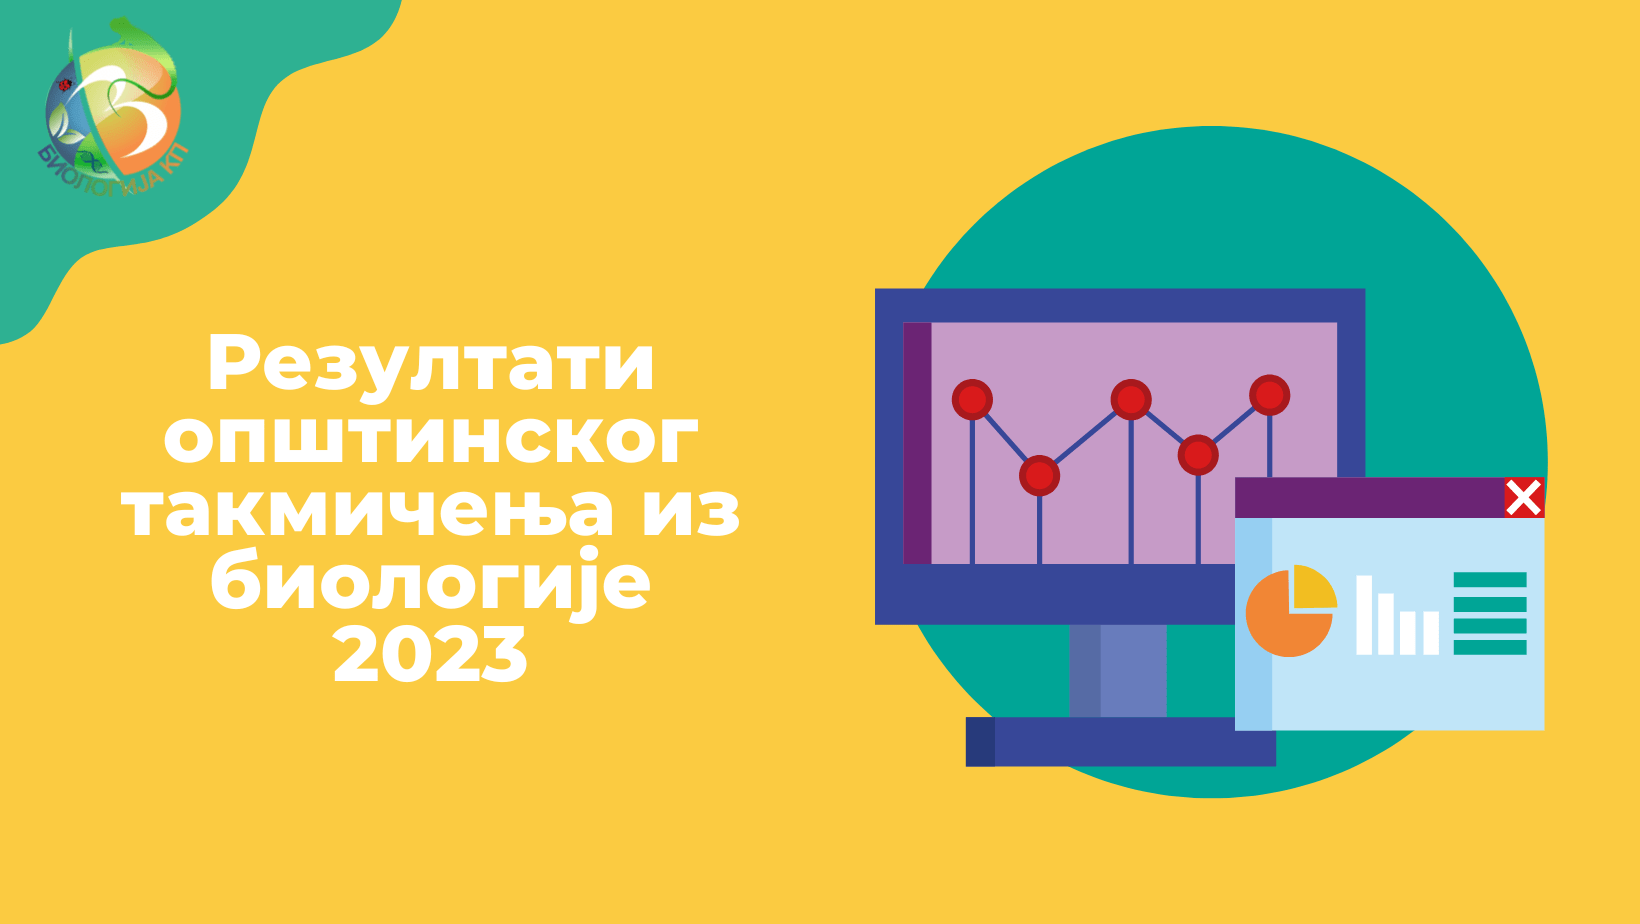 Read more about the article Резултати општинског такмичења из биологије 2023: Општина Палилула (Ниш)